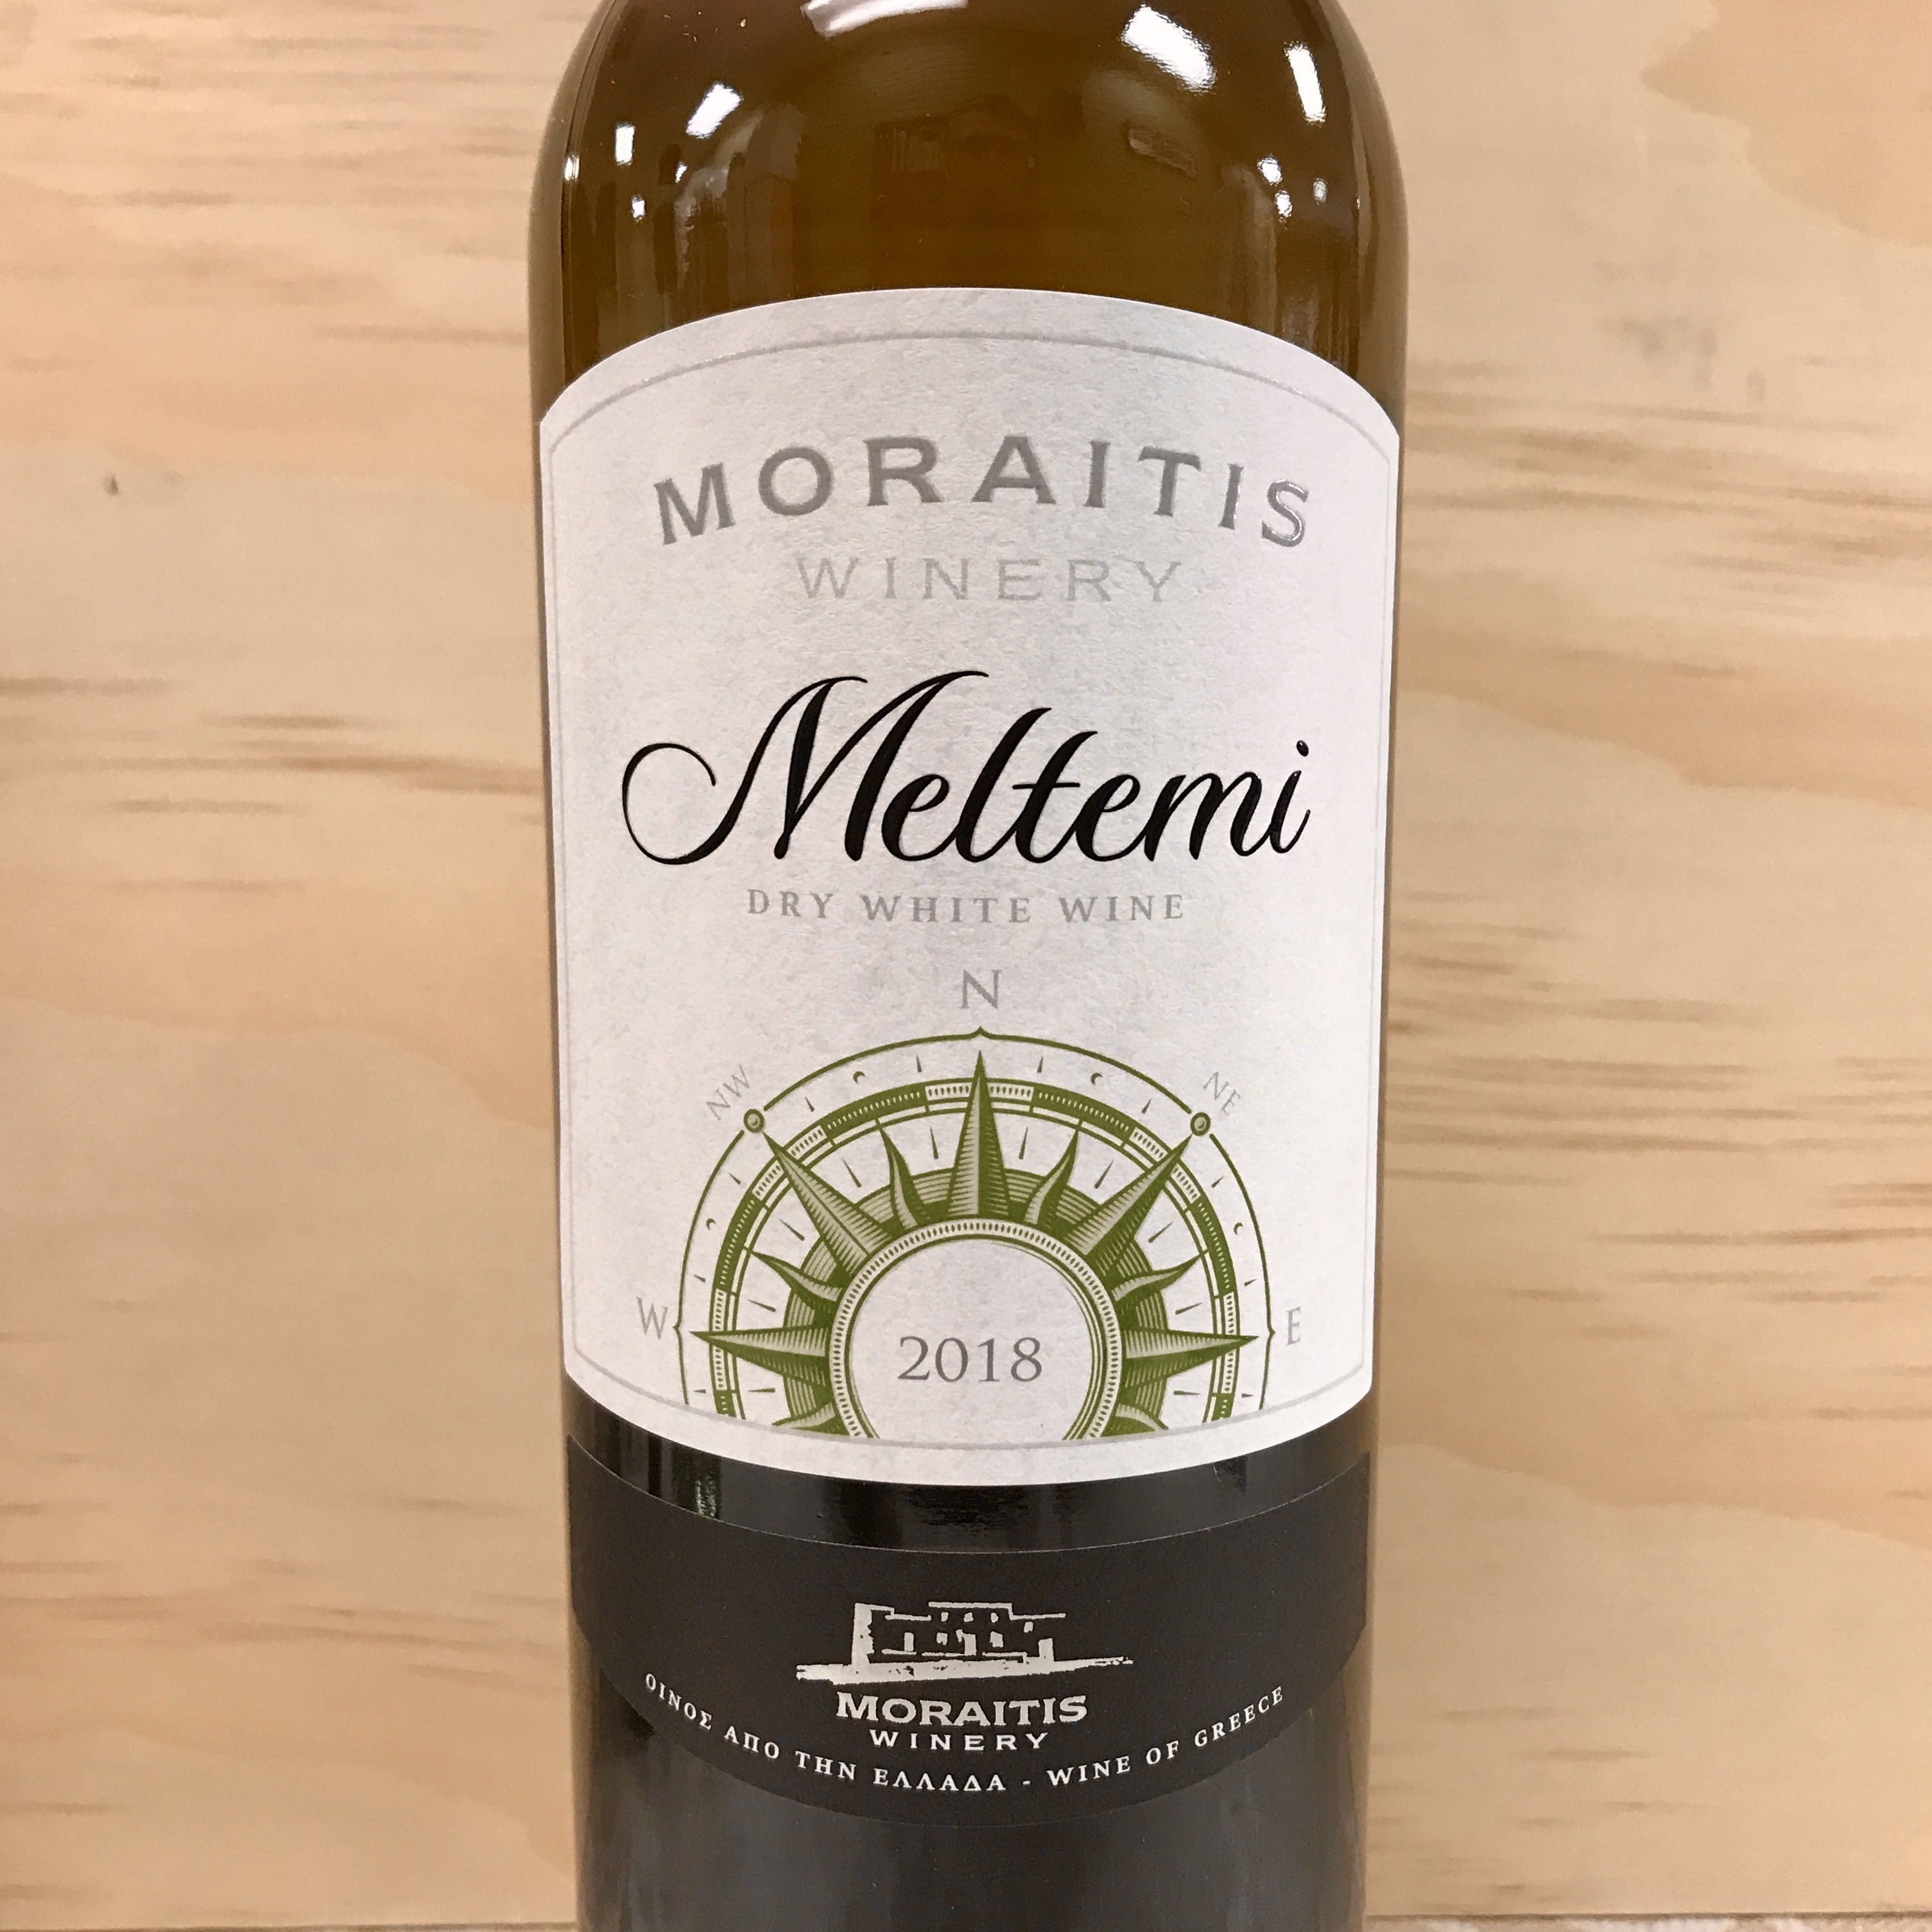 Moraitis Meltemi Dry white wine 2018